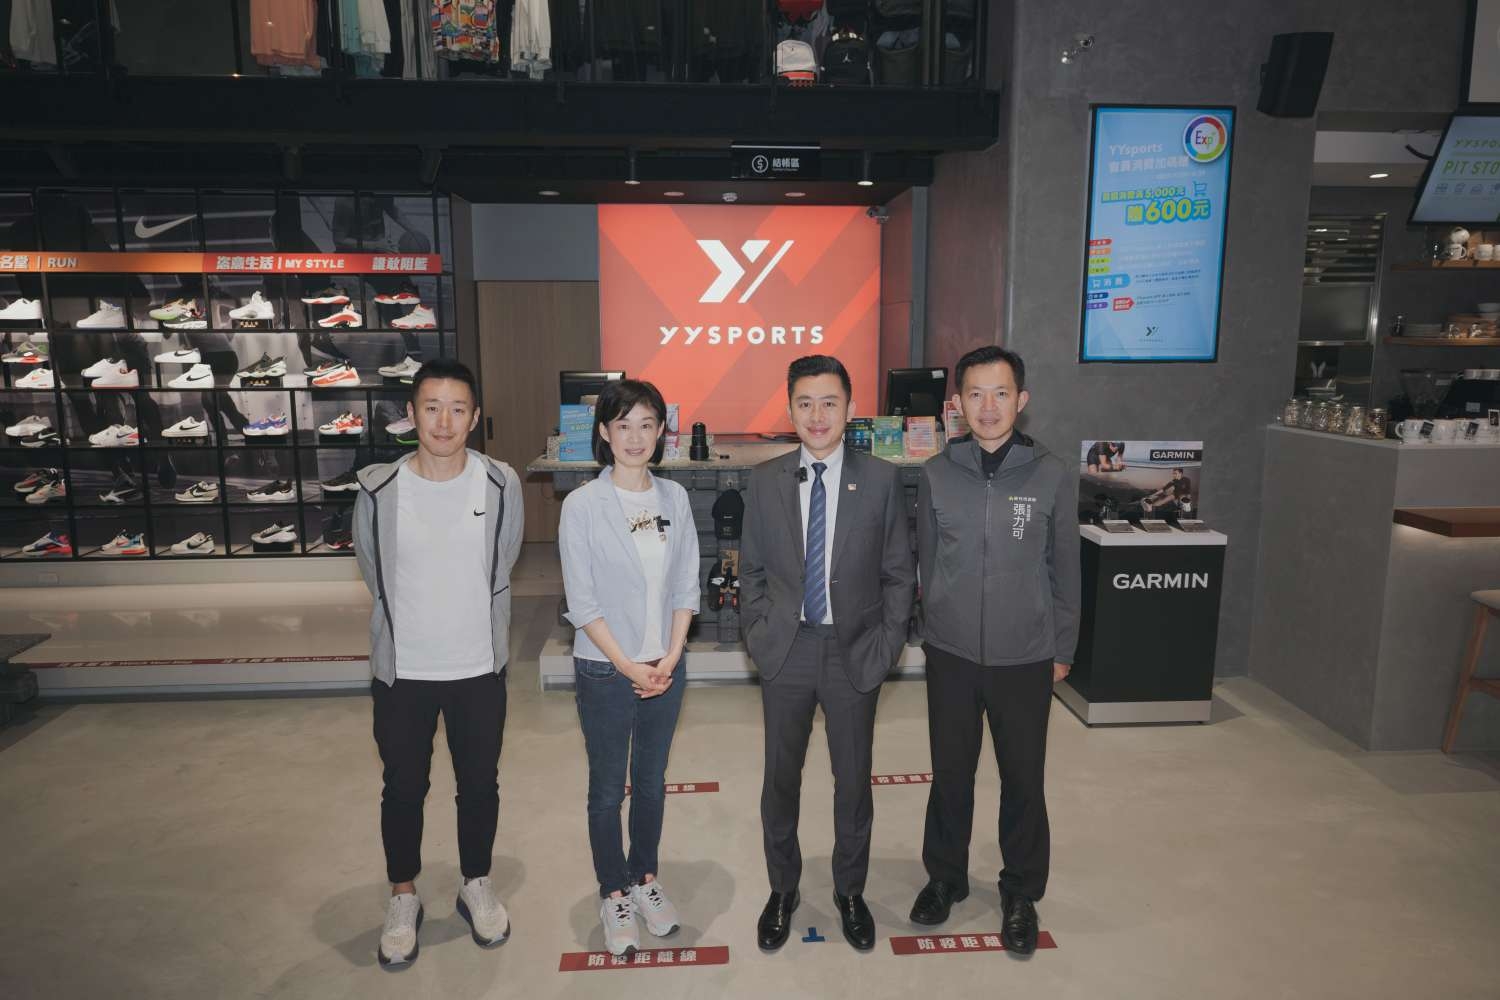 新竹市長林智堅（右2）、產發處長張力可（右1）、YYsports台灣區總經理王文欣（右3）、YYsports品牌發展總監張樹人（右4）一同合影